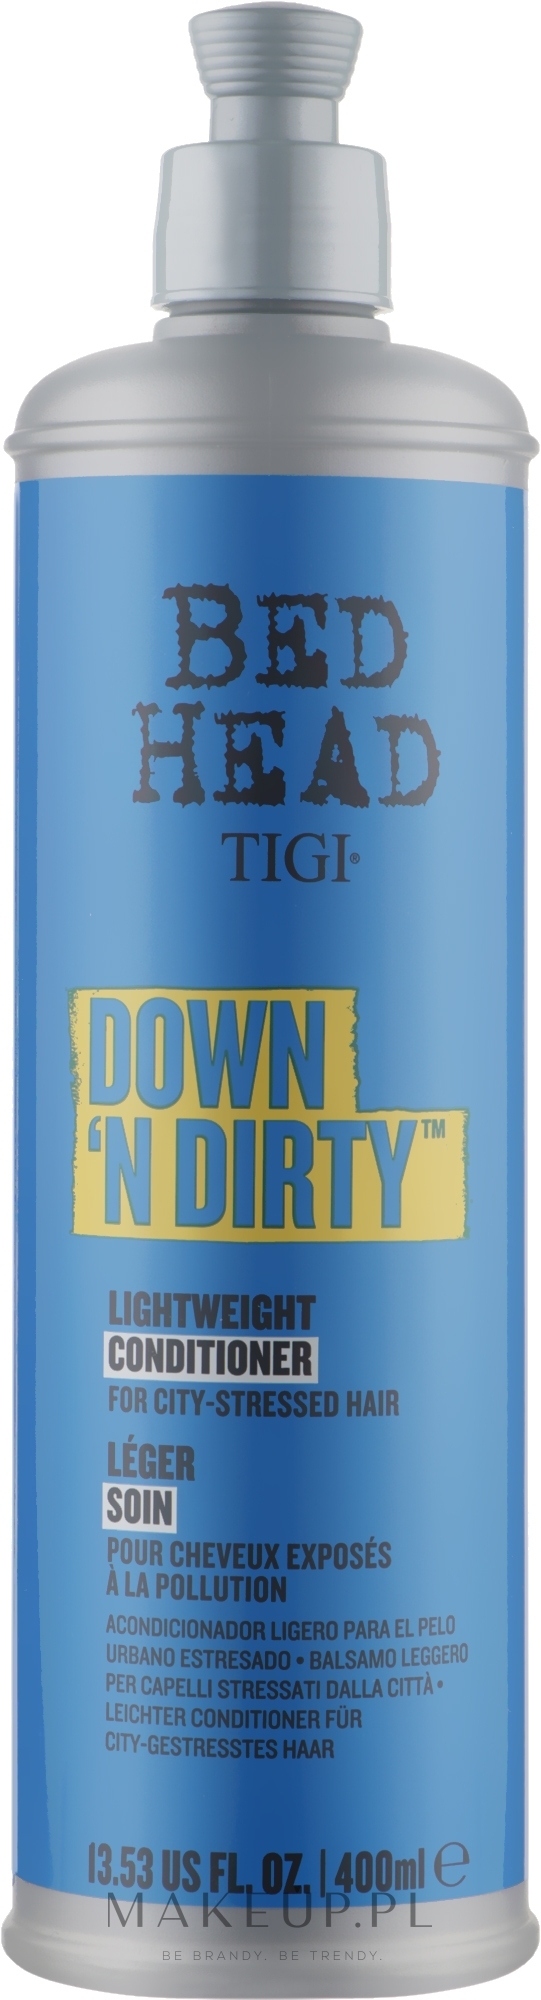 Detoksykująca odżywka do włosów - Tigi Bad Head Down N ’Dirty Conditioner — Zdjęcie 400 ml